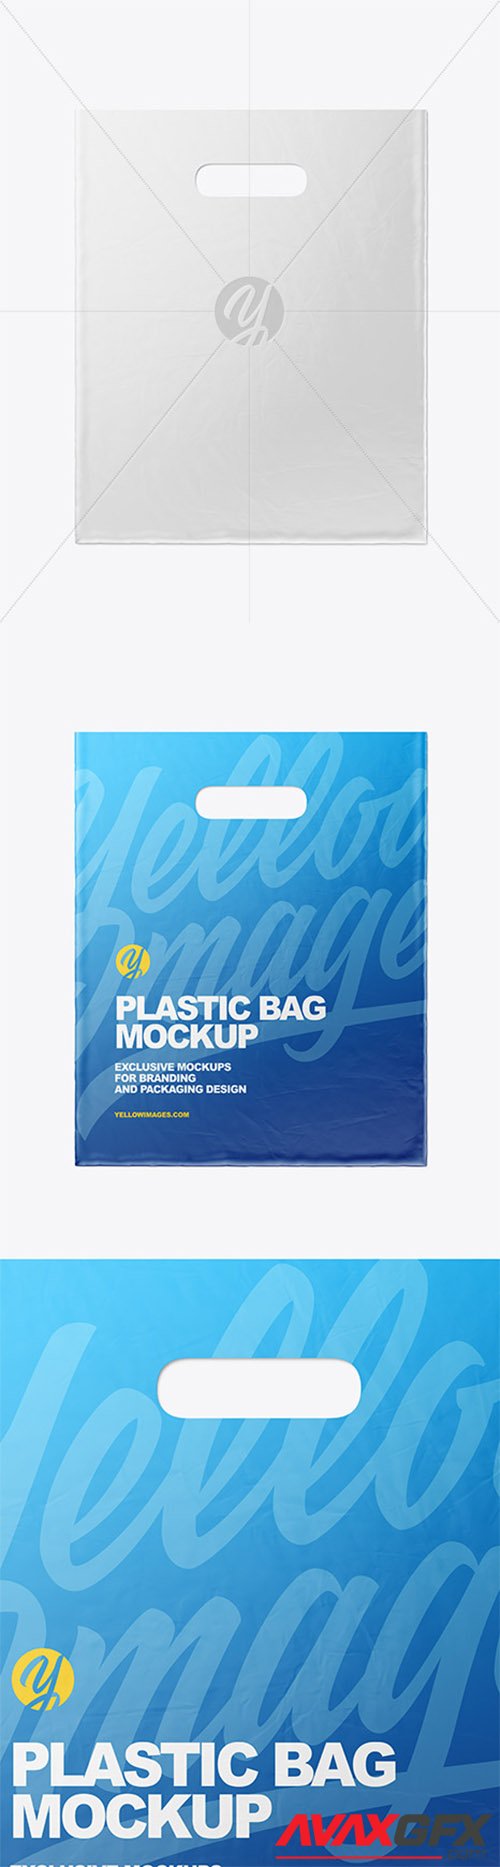 Plastic Carrier Bag Mockup 80480